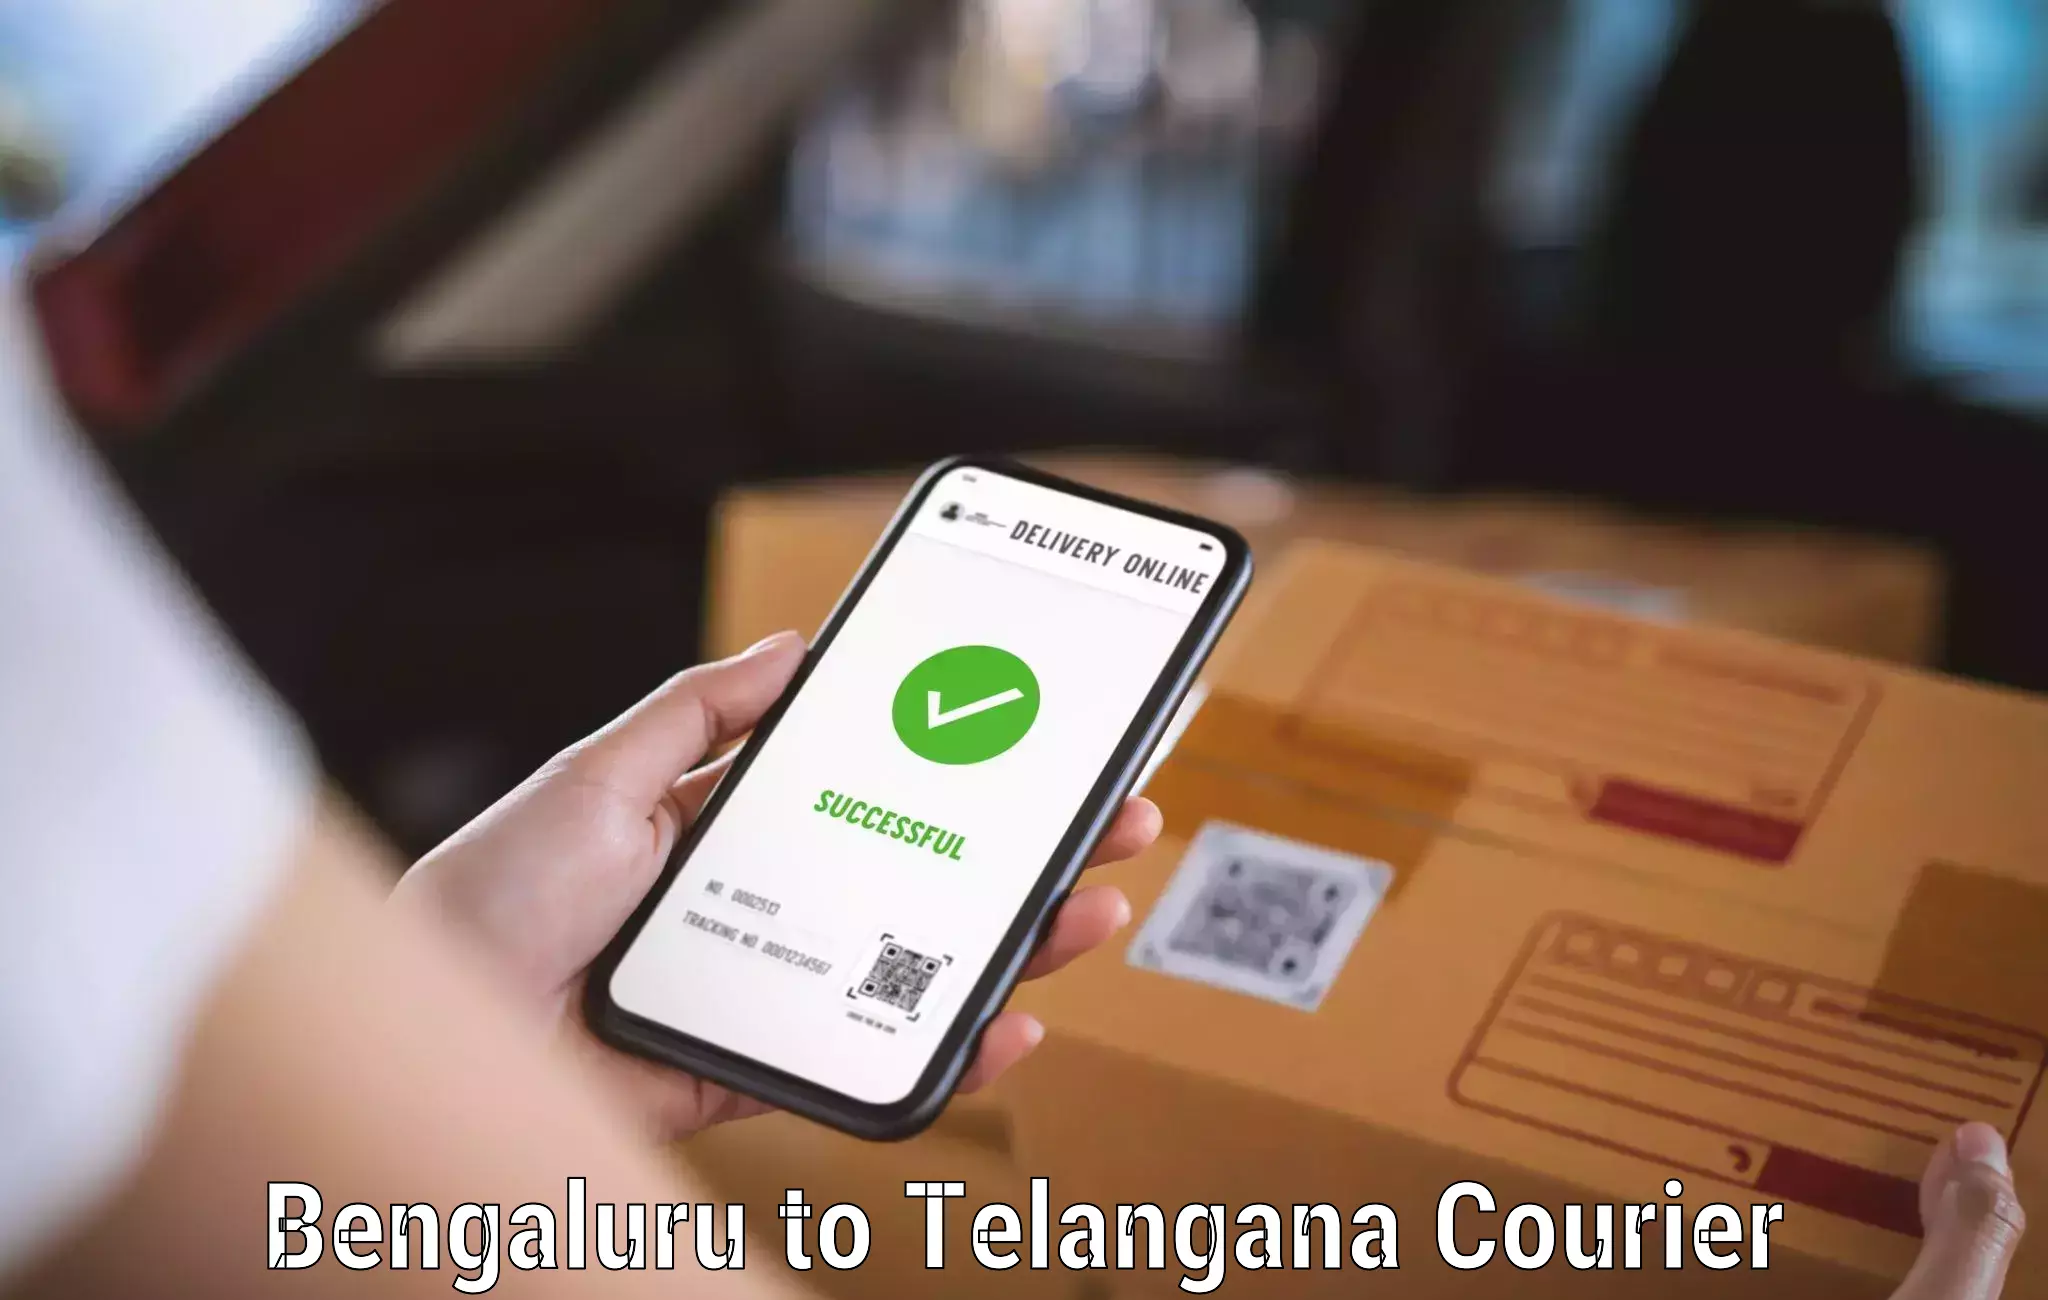 Bulk order courier Bengaluru to Nereducharla